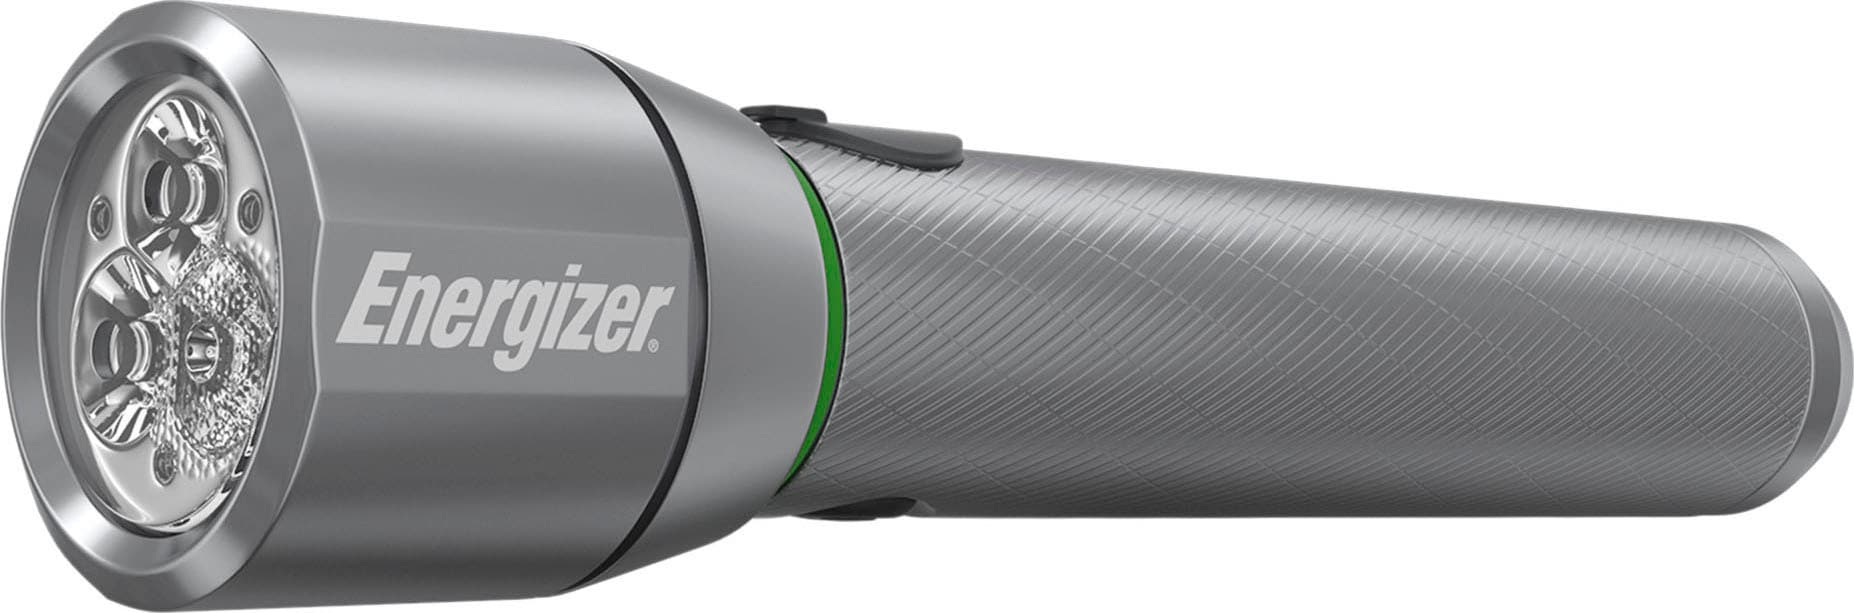 Energizer LED Taschenlampe »Vision HD Metall wiederaufladbar 1200 Lumen«, mit Digital Fokus und zweiseitigem USB-Ladekabel